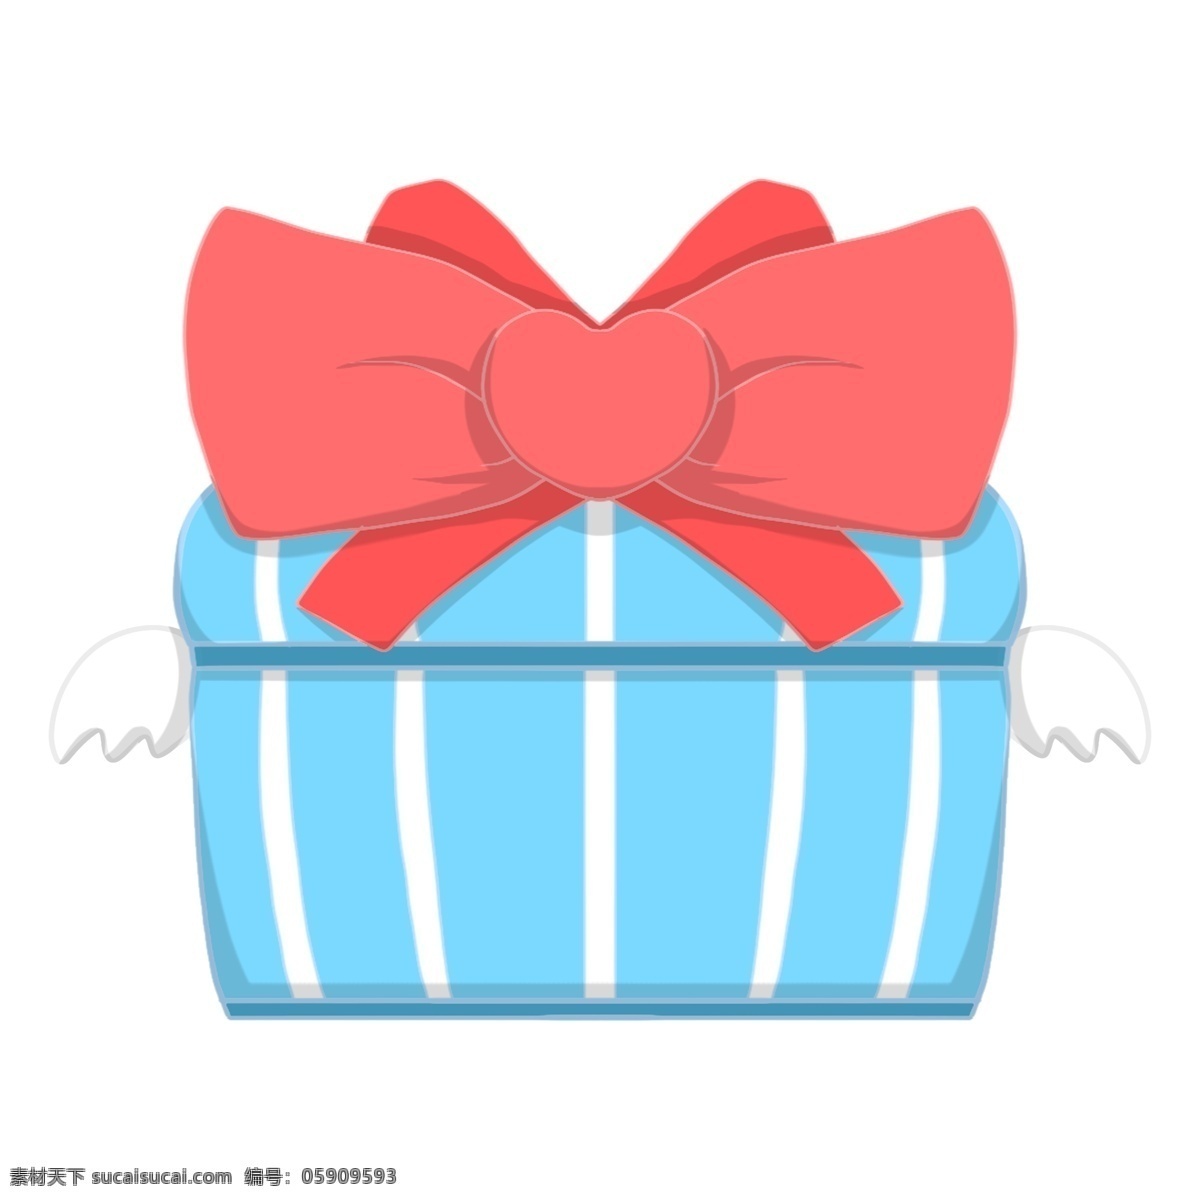 手绘 情人节 礼物 插画 礼物盒 红色蝴蝶结 手绘礼物 插图 蓝色礼物盒 蝴蝶结插图 礼物插画